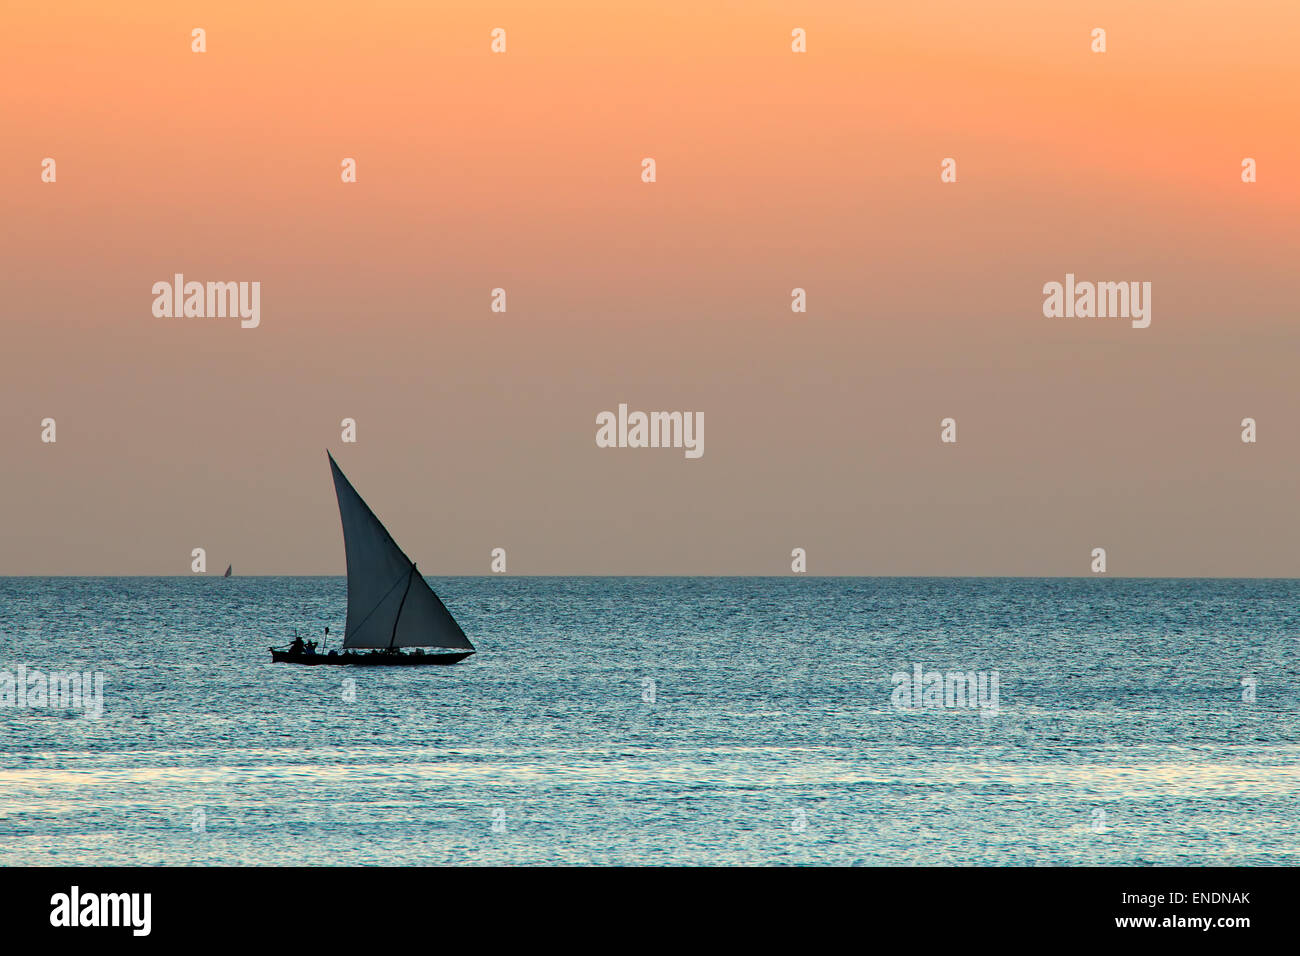 Silhouette d'un petit voilier (dhow) sur l'eau au coucher du soleil, l'île de Zanzibar Banque D'Images